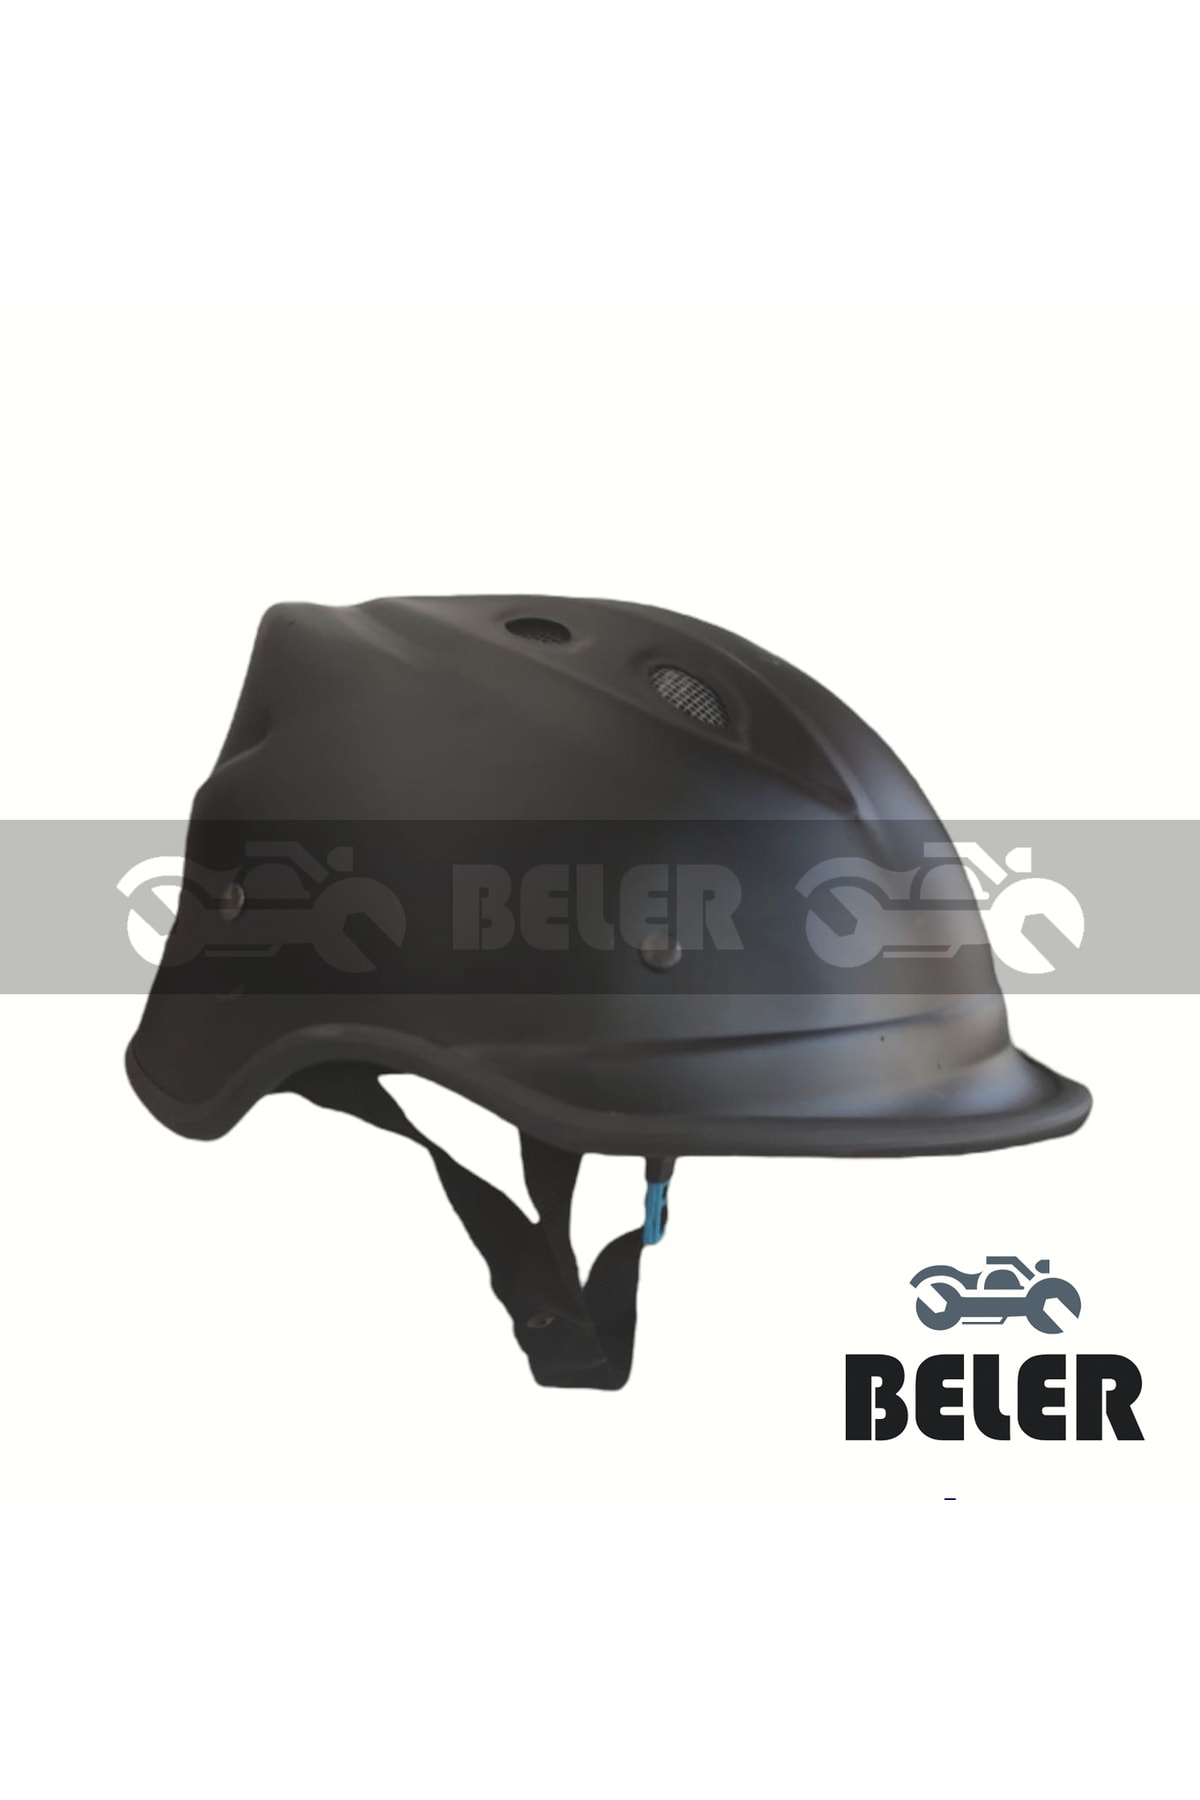 BELER Jokey Kask Havalandırmalı Motosiklet & Bisiklet Kaskı (yerli Üretim)